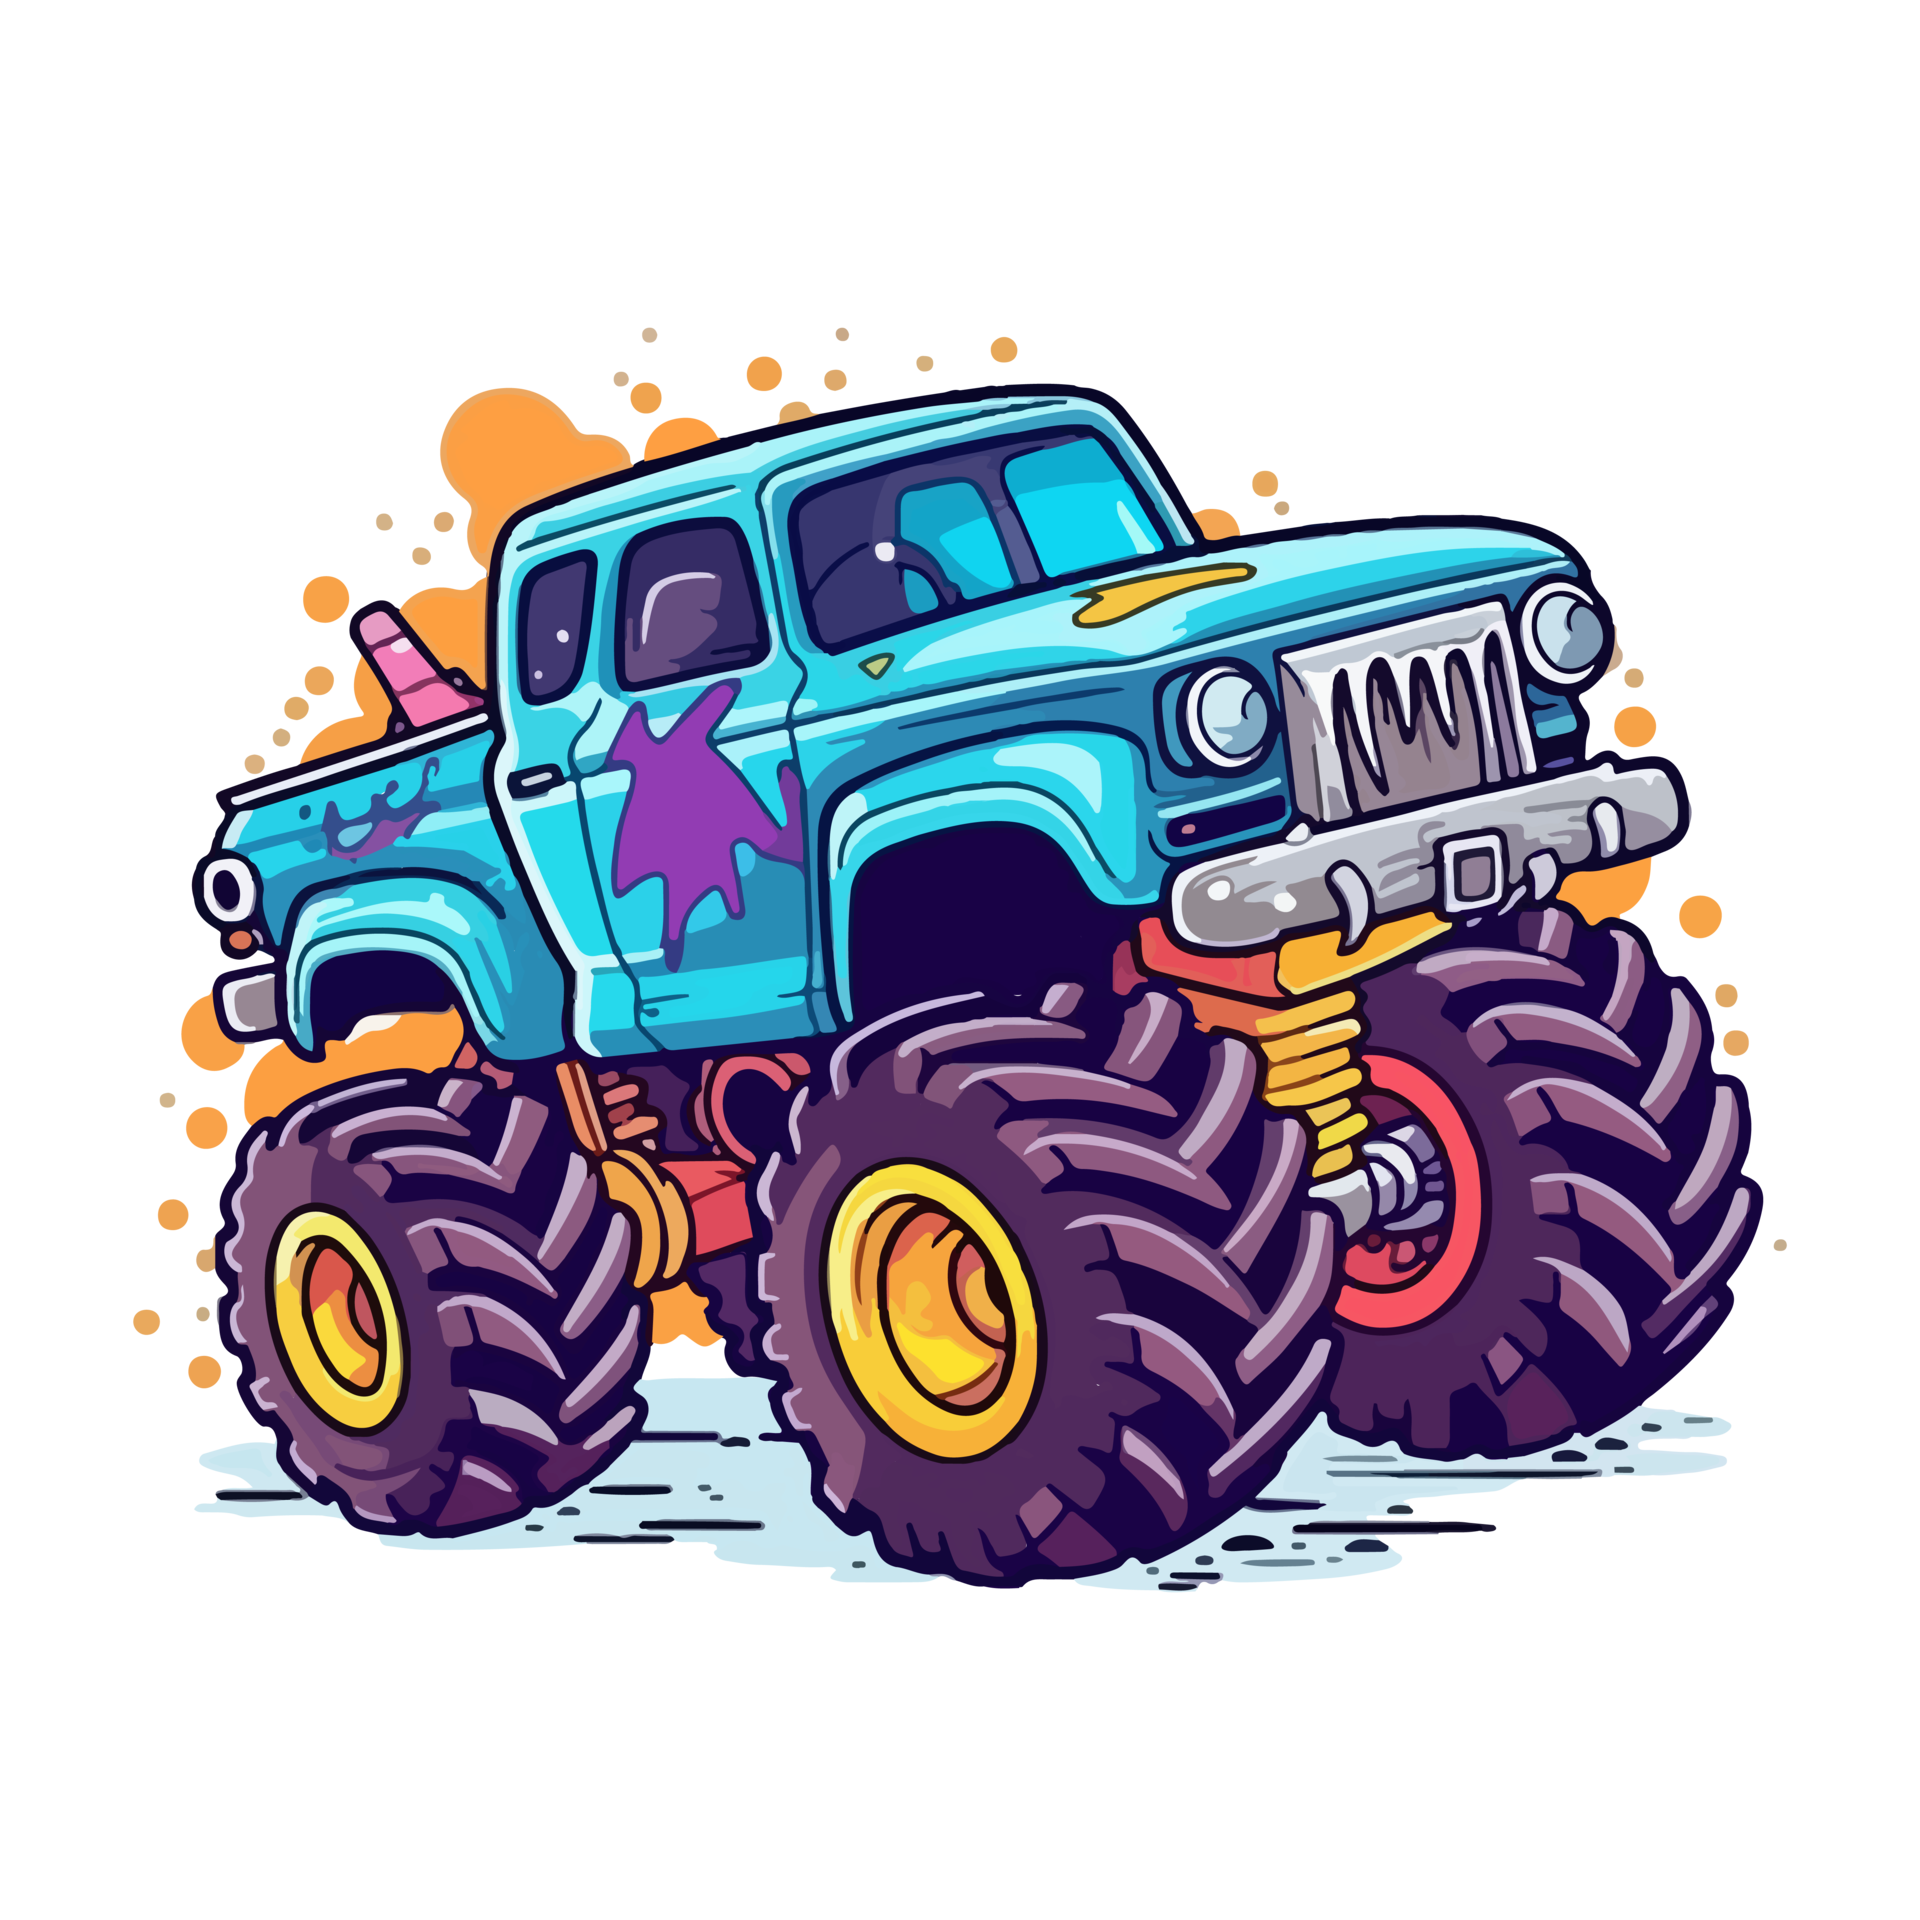 Cute blue monster truck cartoon illustration